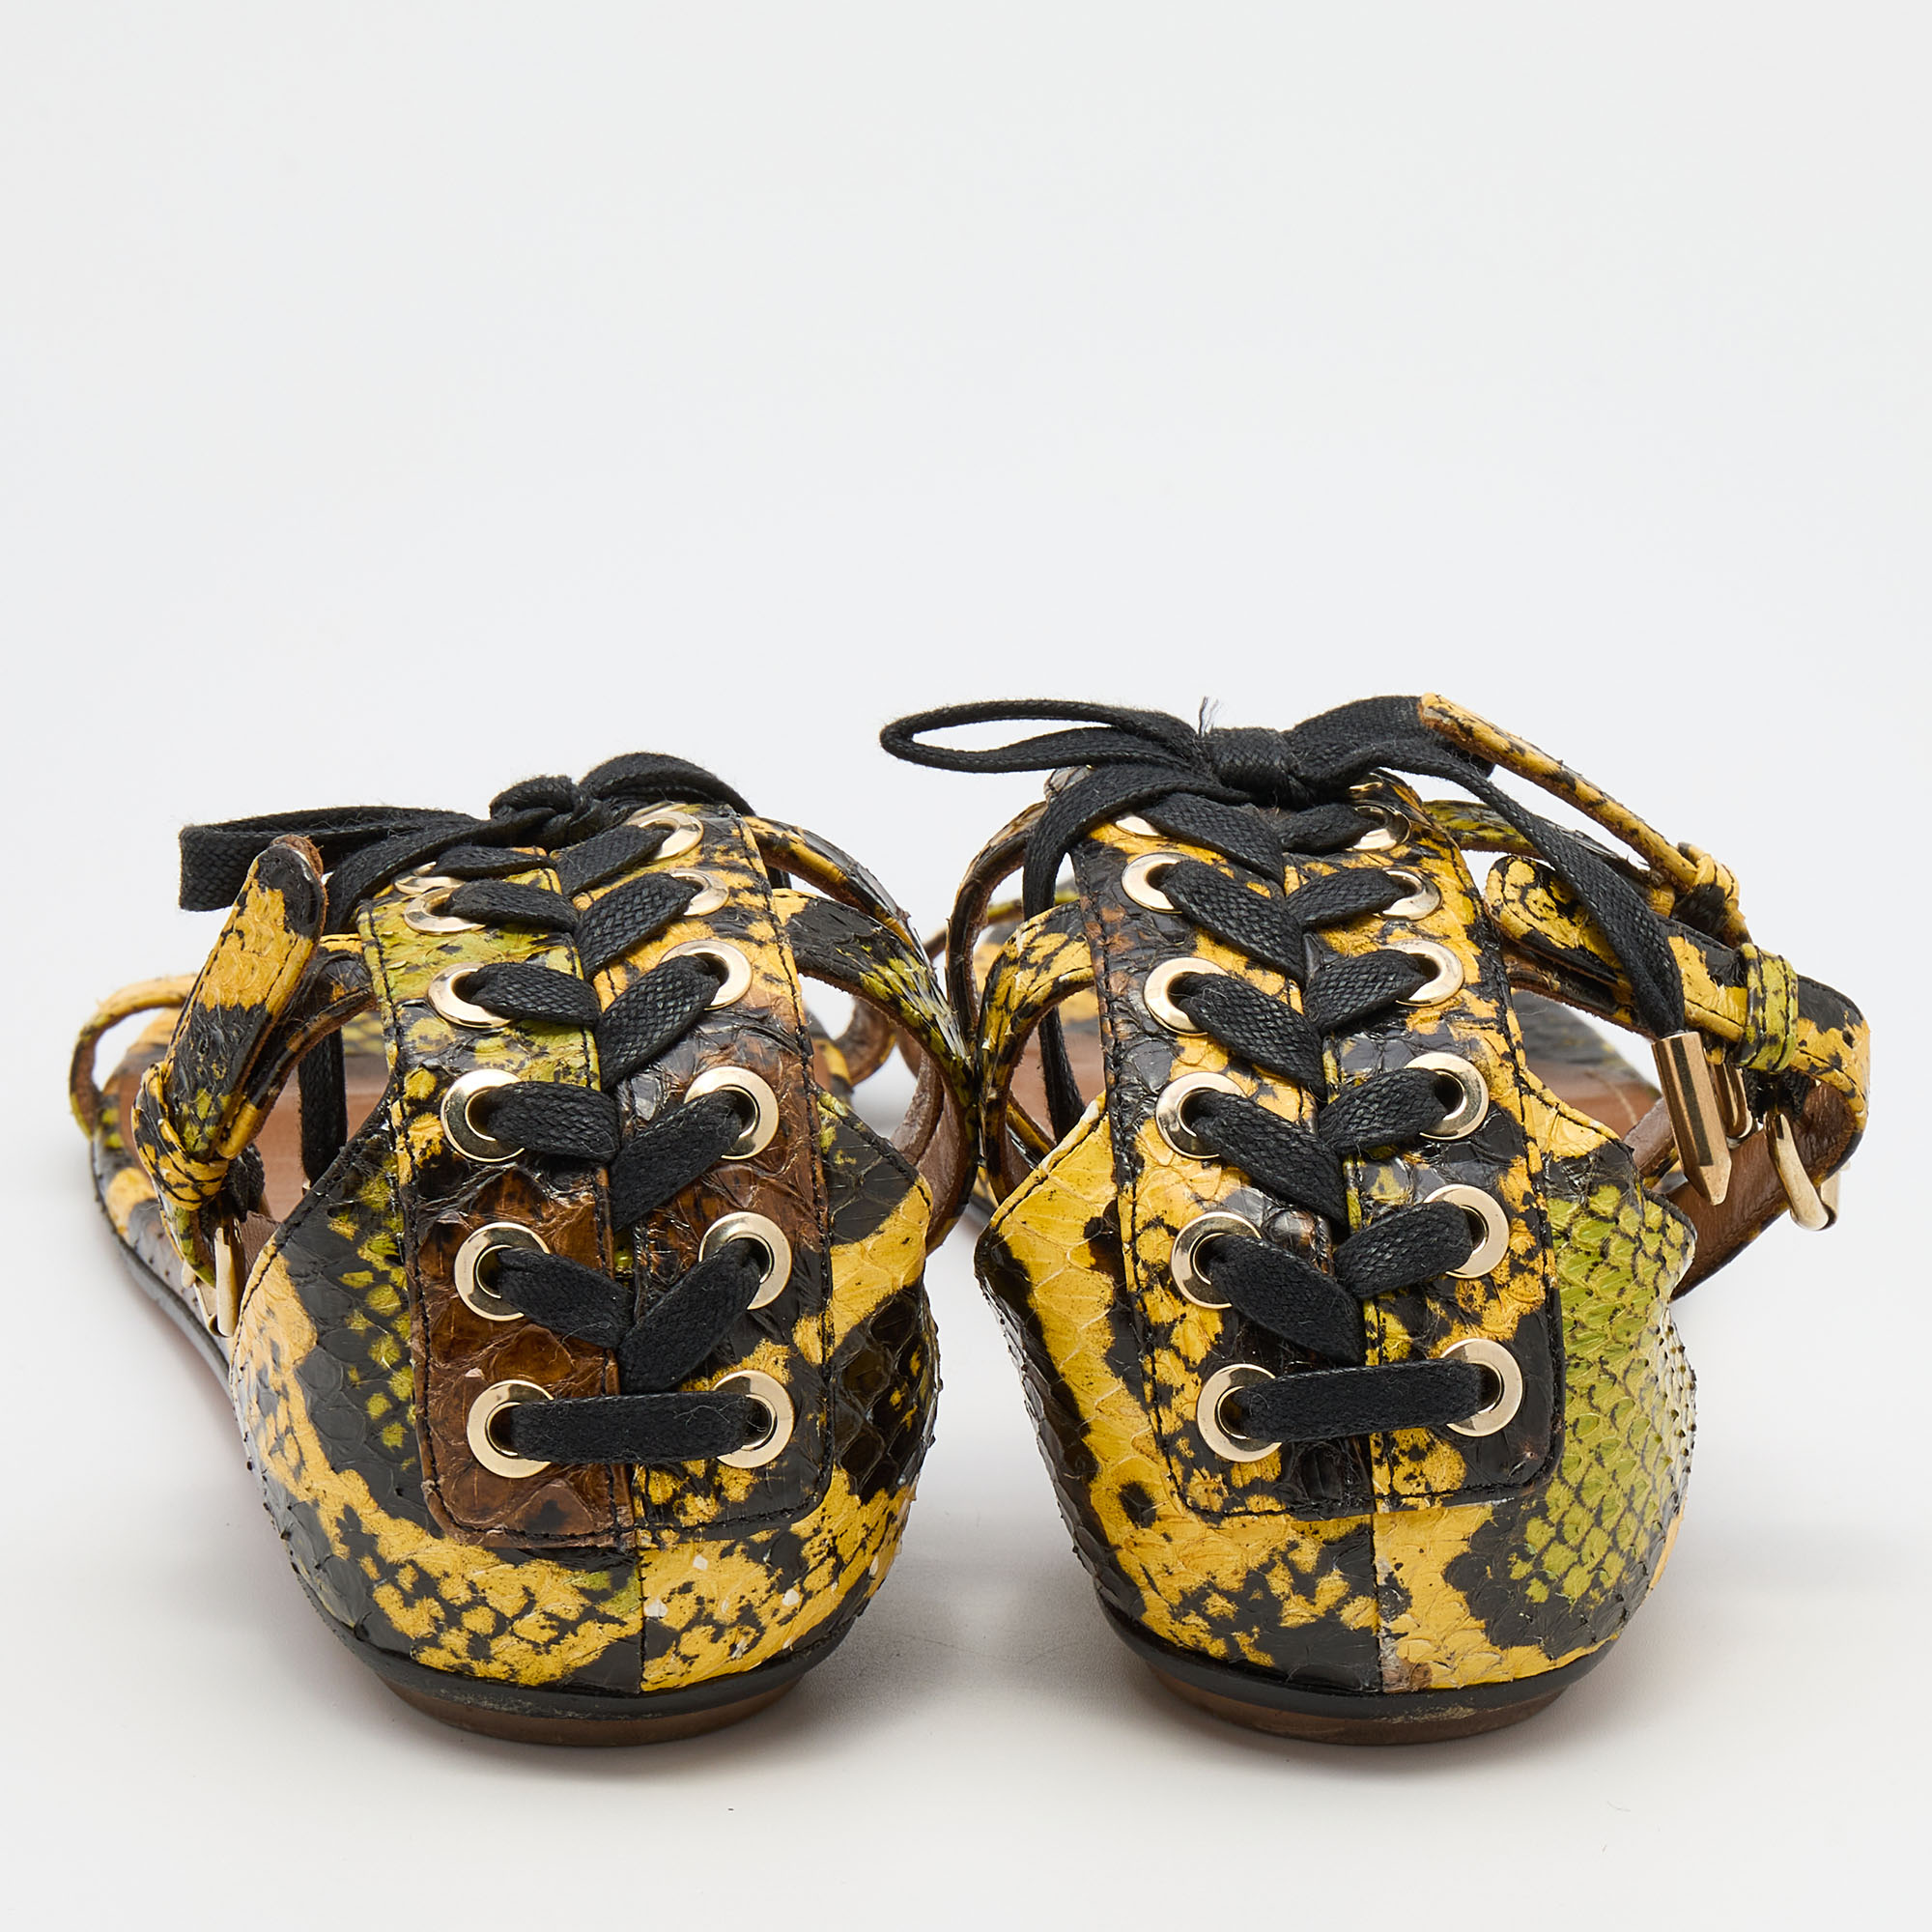 Aquazzura Multicolor Python Ankle Strap Flat Sandals Size 38